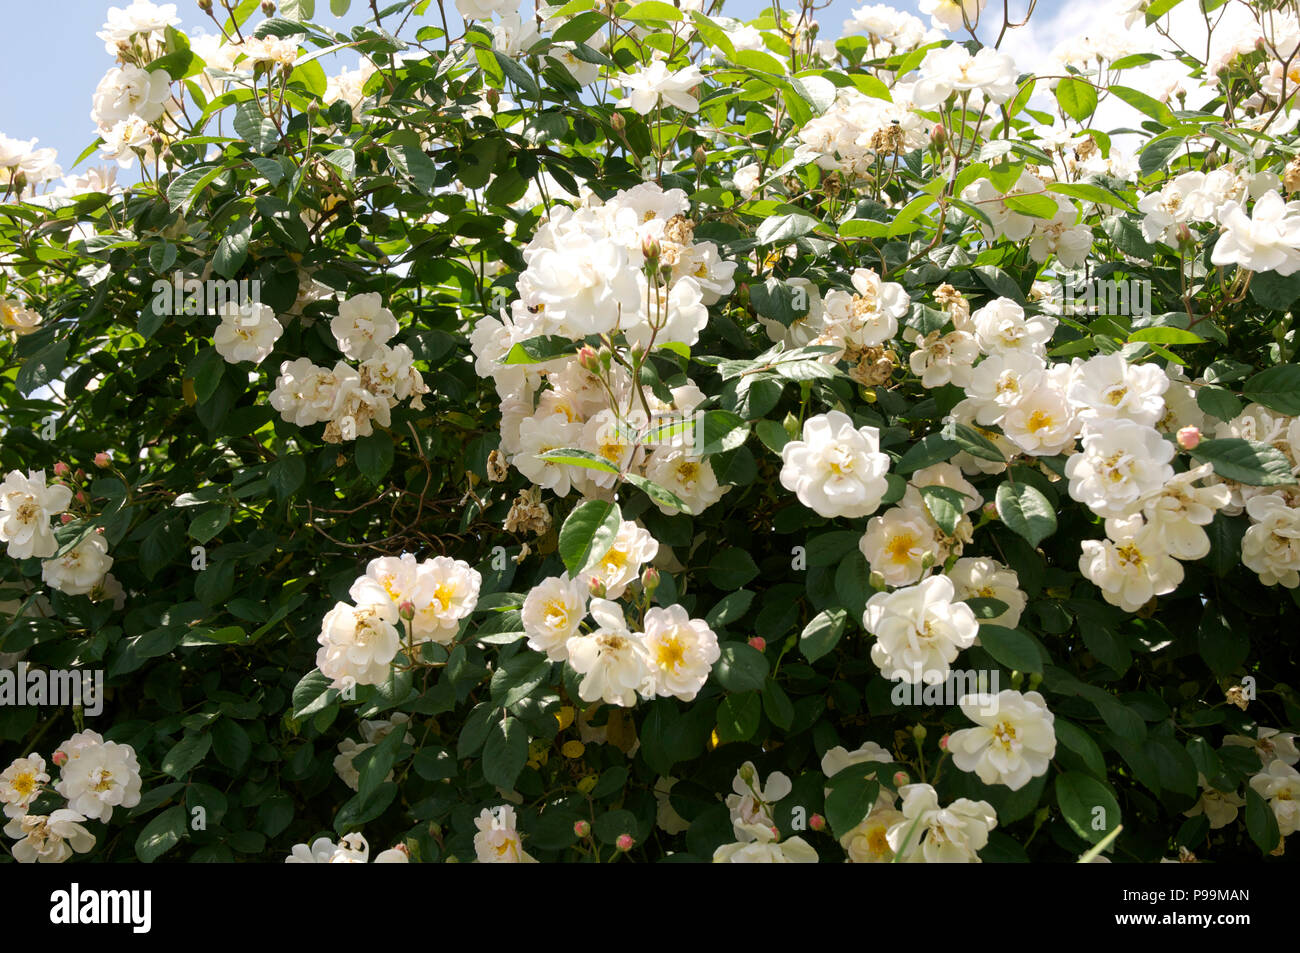 Rosa 'Trier', white hybrid musk rose Stock Photo